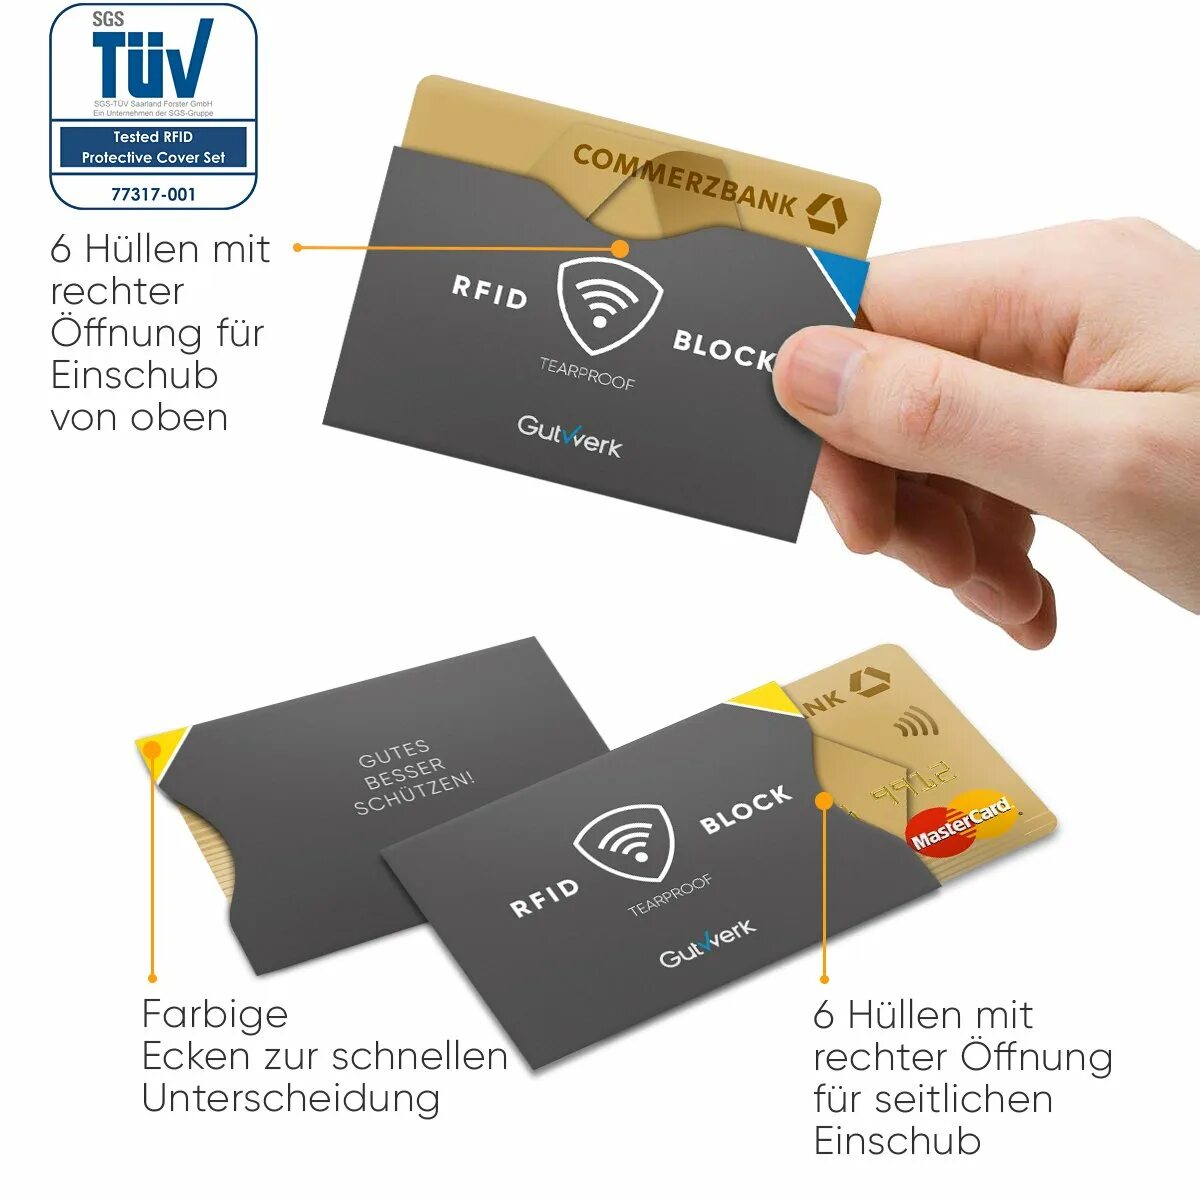 RFID-карта. Commerzbank карта. Commerzbank Card. Commerzbank Debit Card.